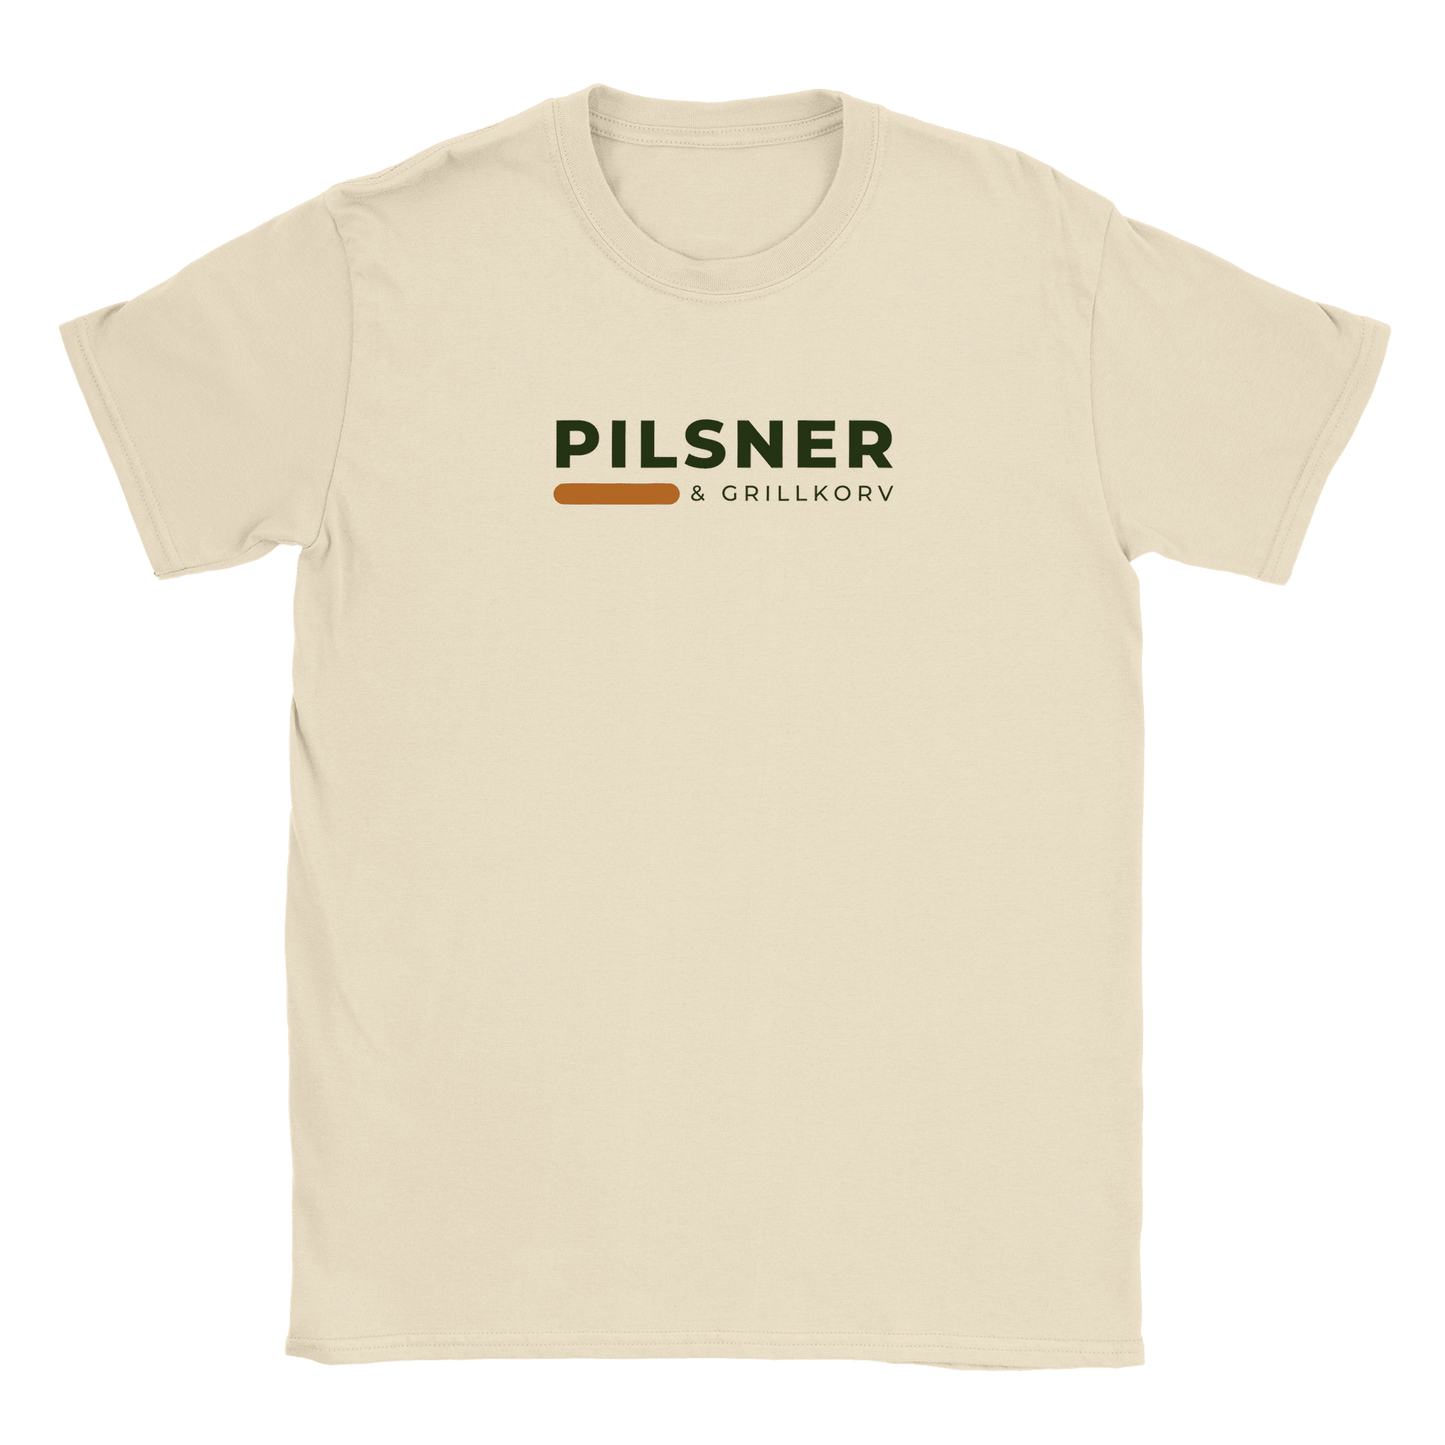 Pilsner och grillkorv - T-shirt Beige